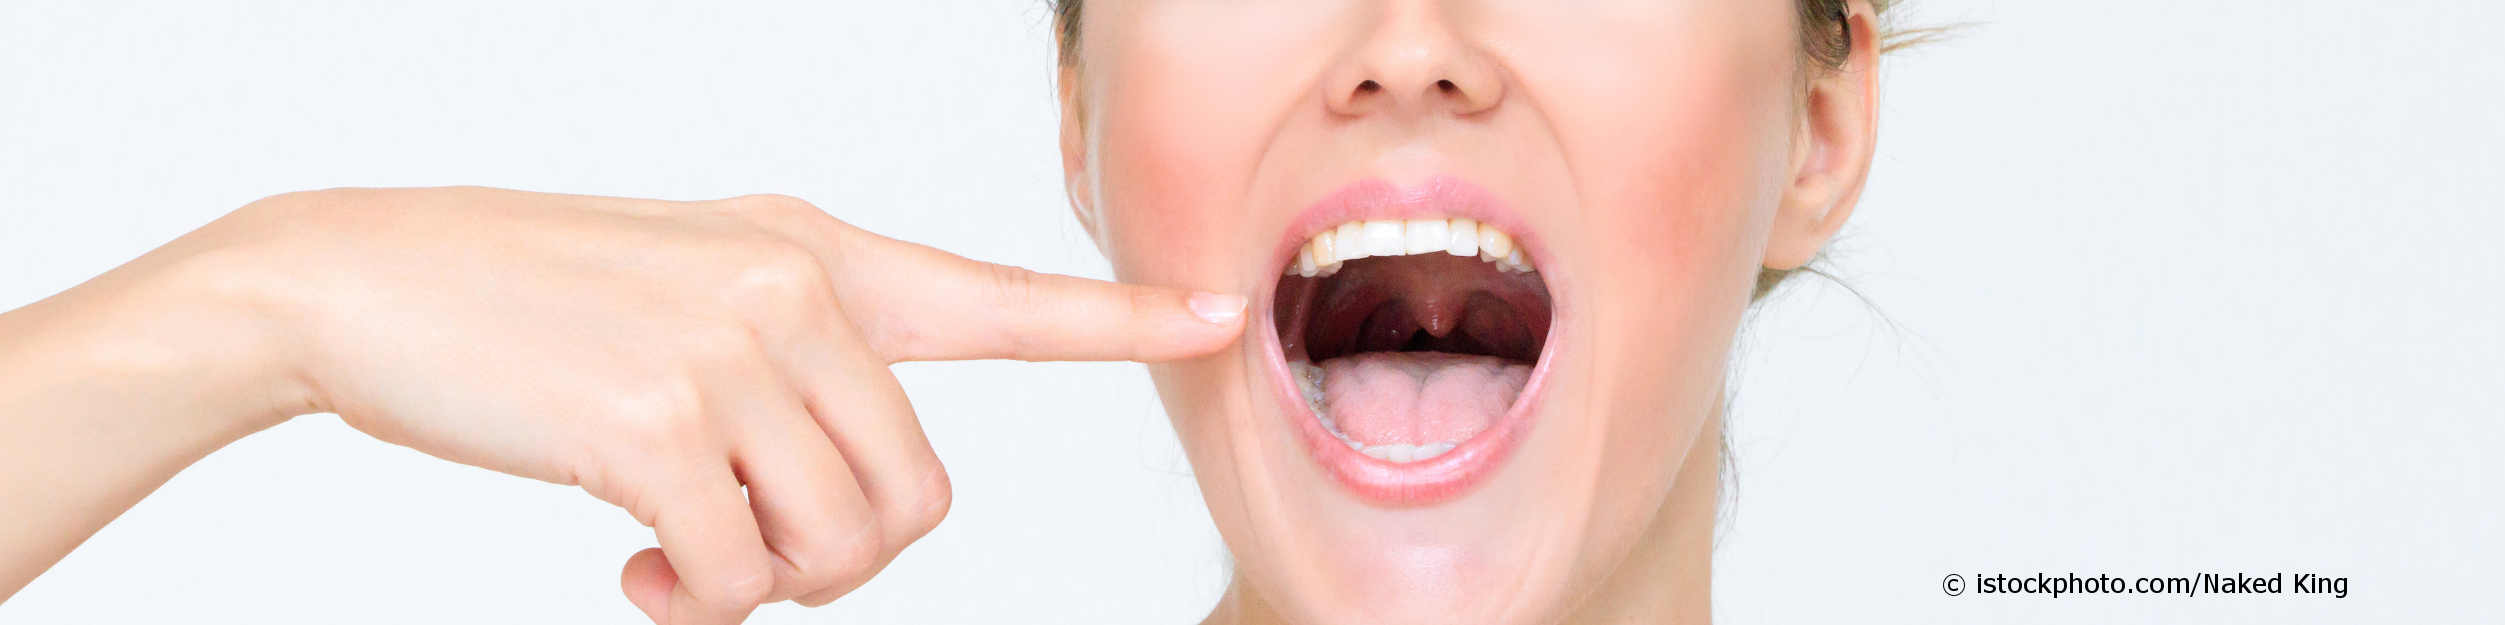 Junge Frau mit Mundgeruch zeigt auf ihre belegte Zunge und Rachen.